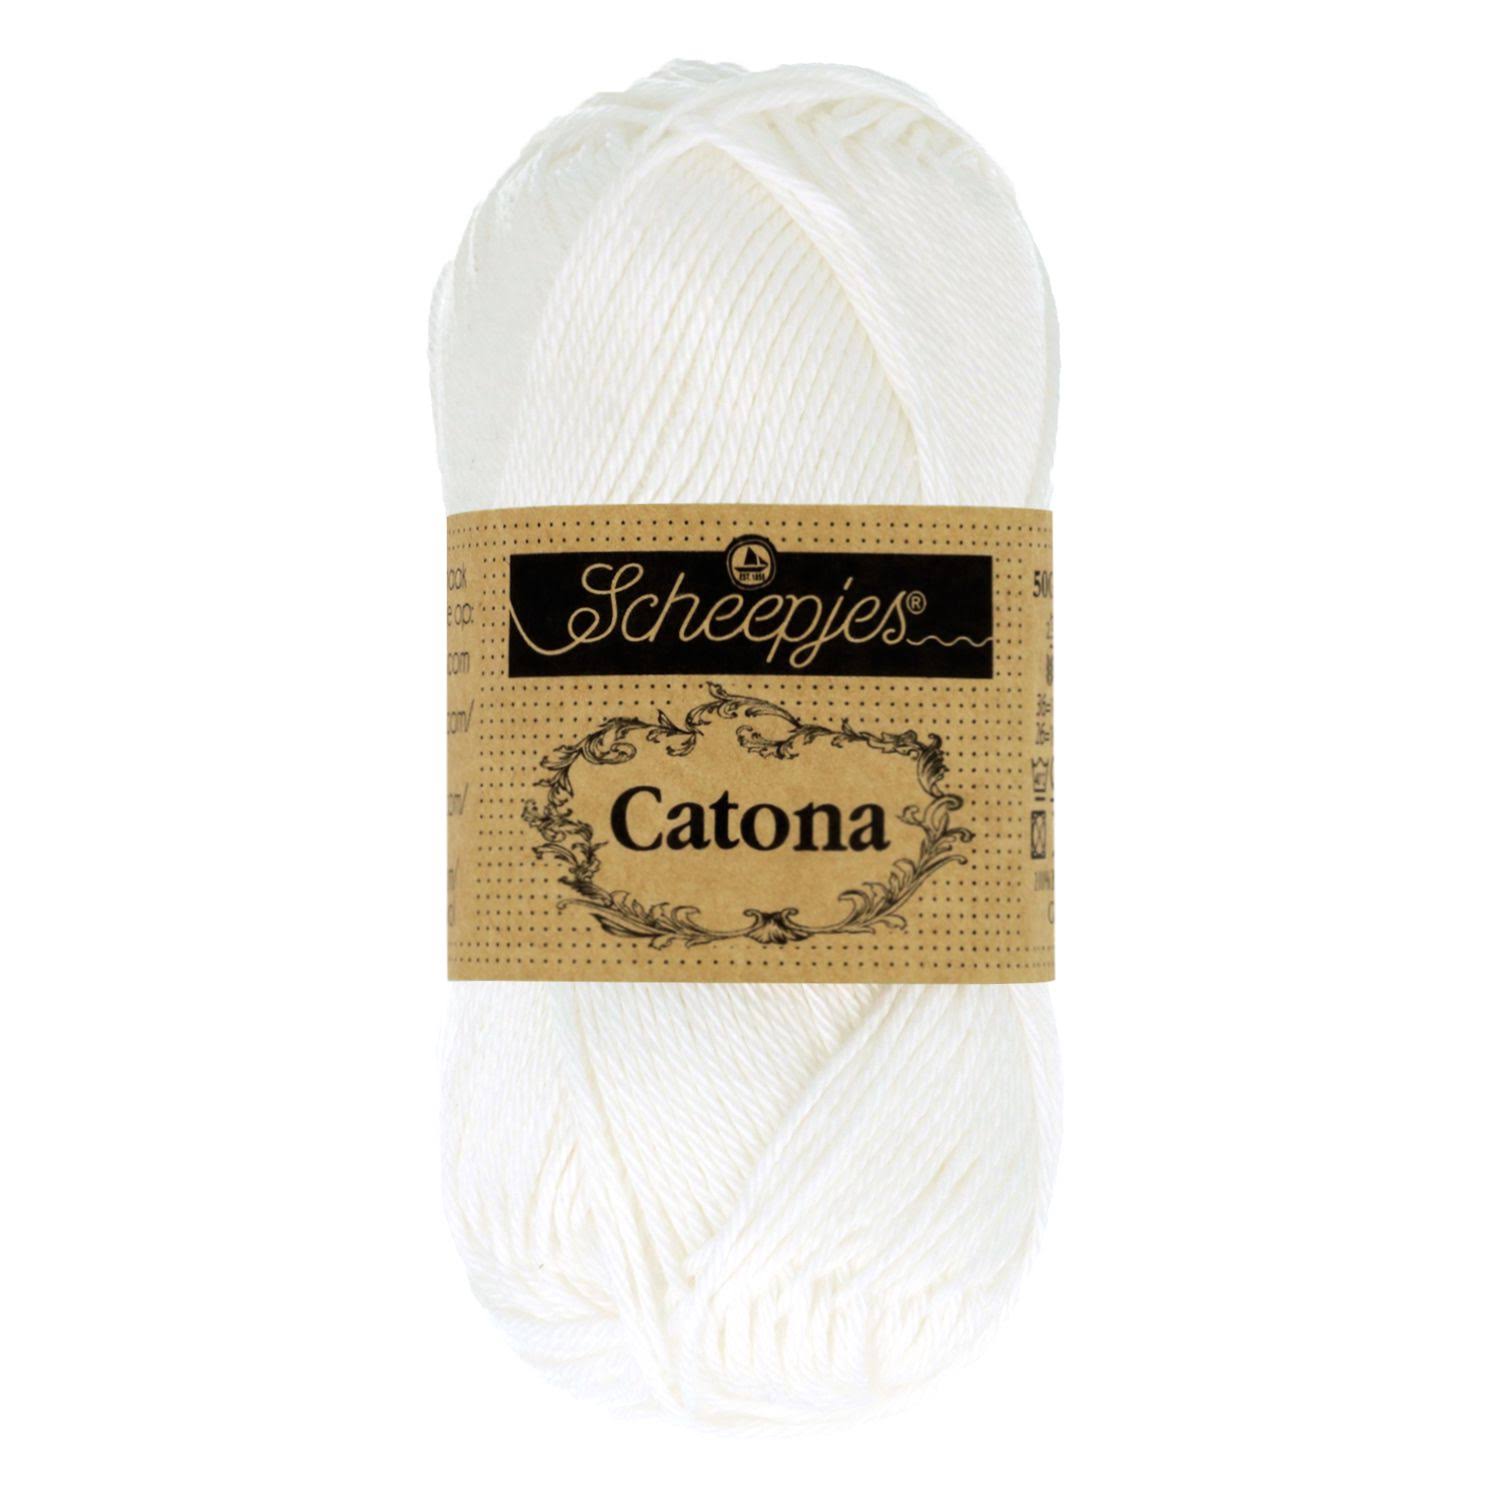 Scheepjes Catona 100g Knitting Yarn White/Snow White (106)